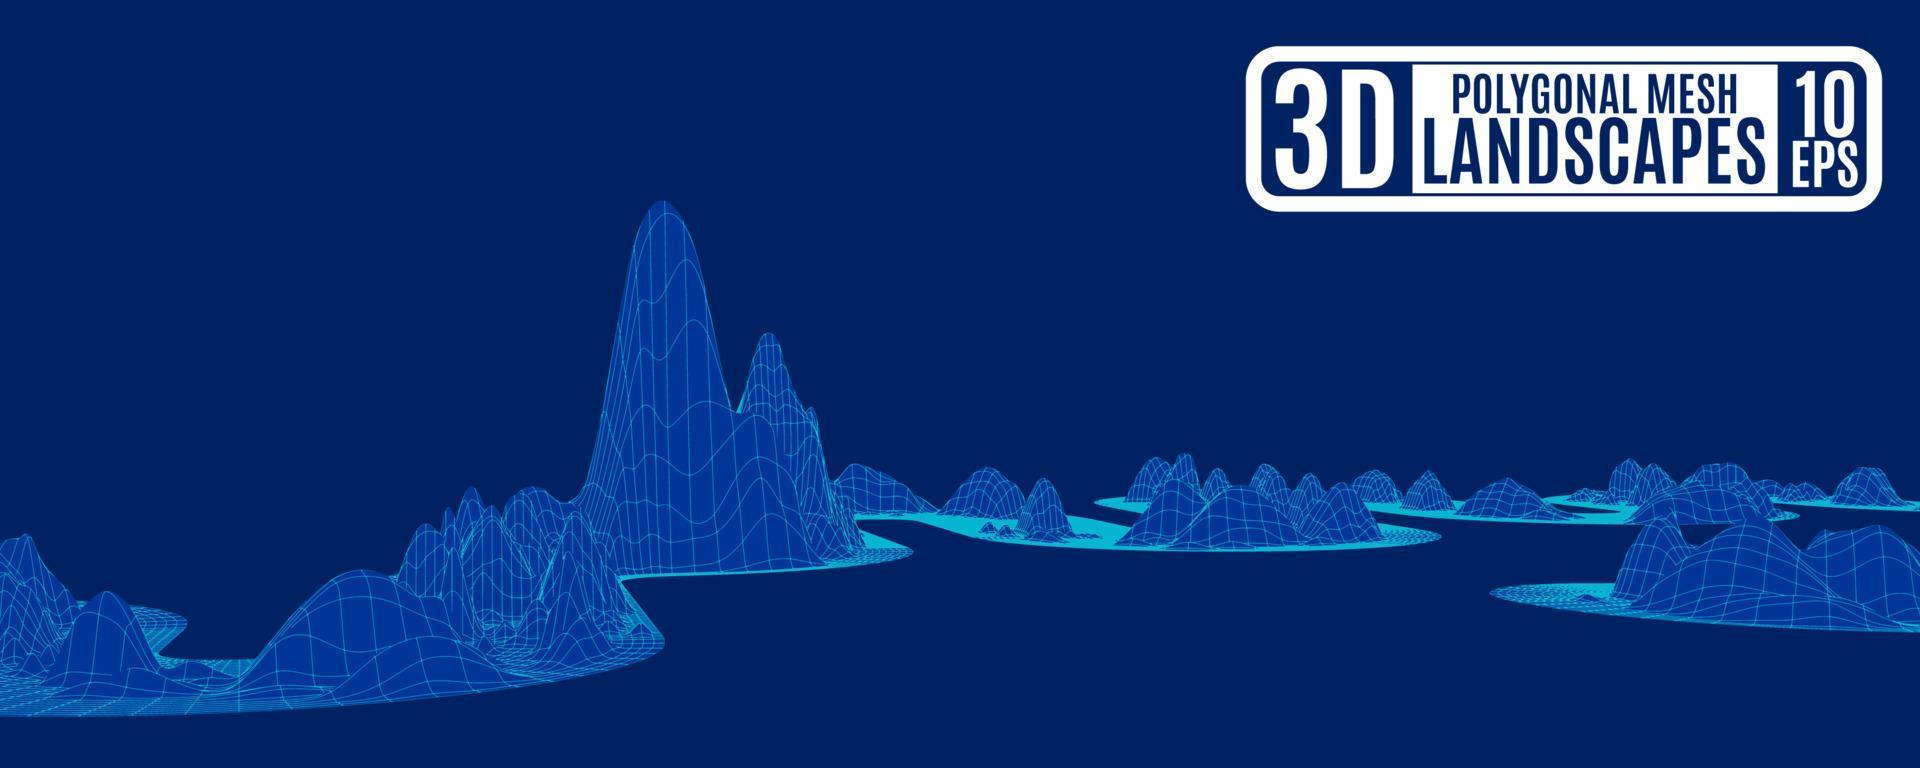 Paisaje fantástico de montañas poligonales en neón mágico azul vector